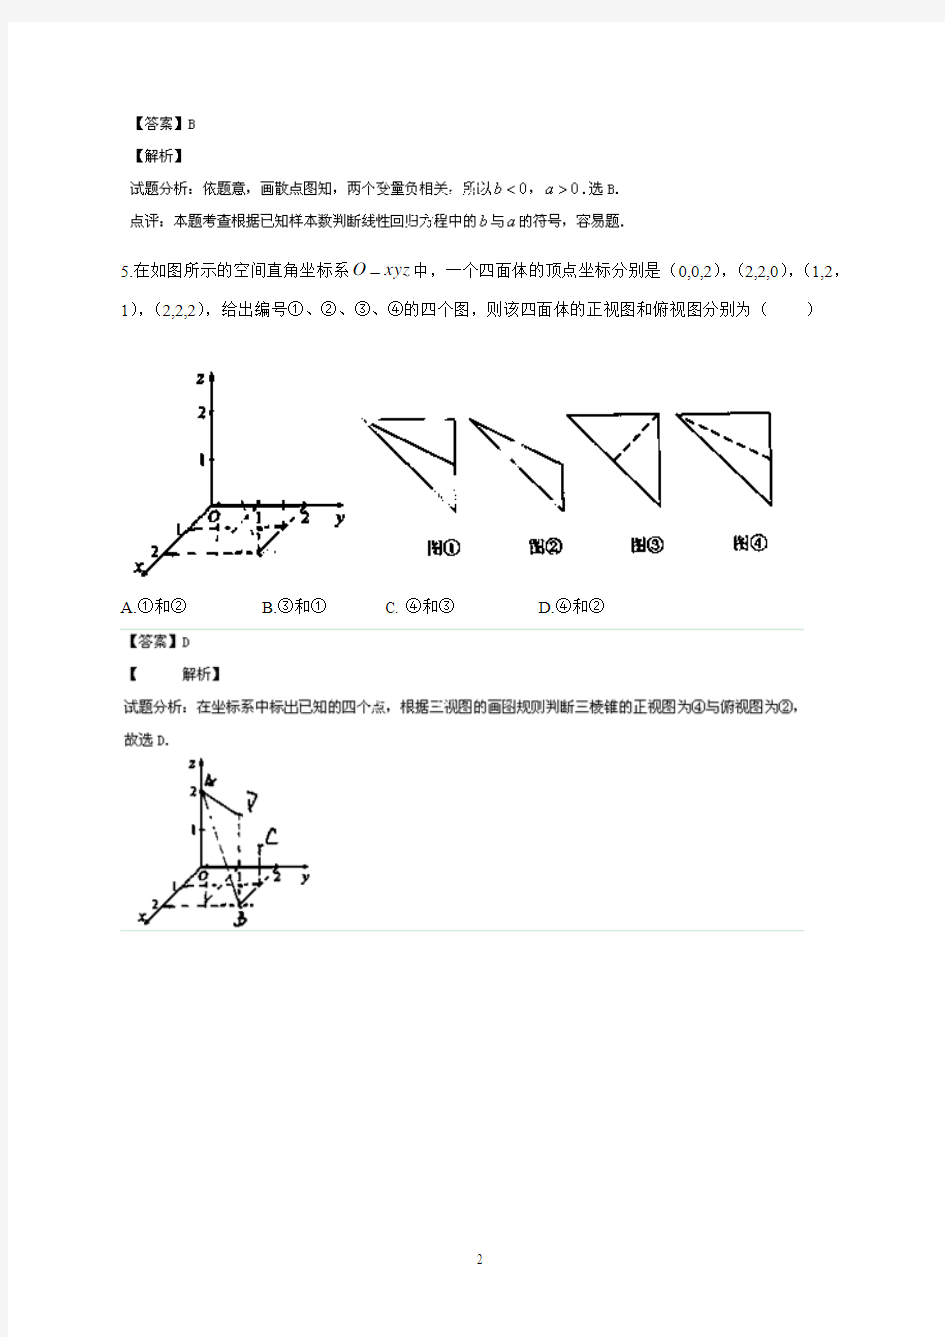 2014年高考真题—=—理科数学(湖北卷)解析版